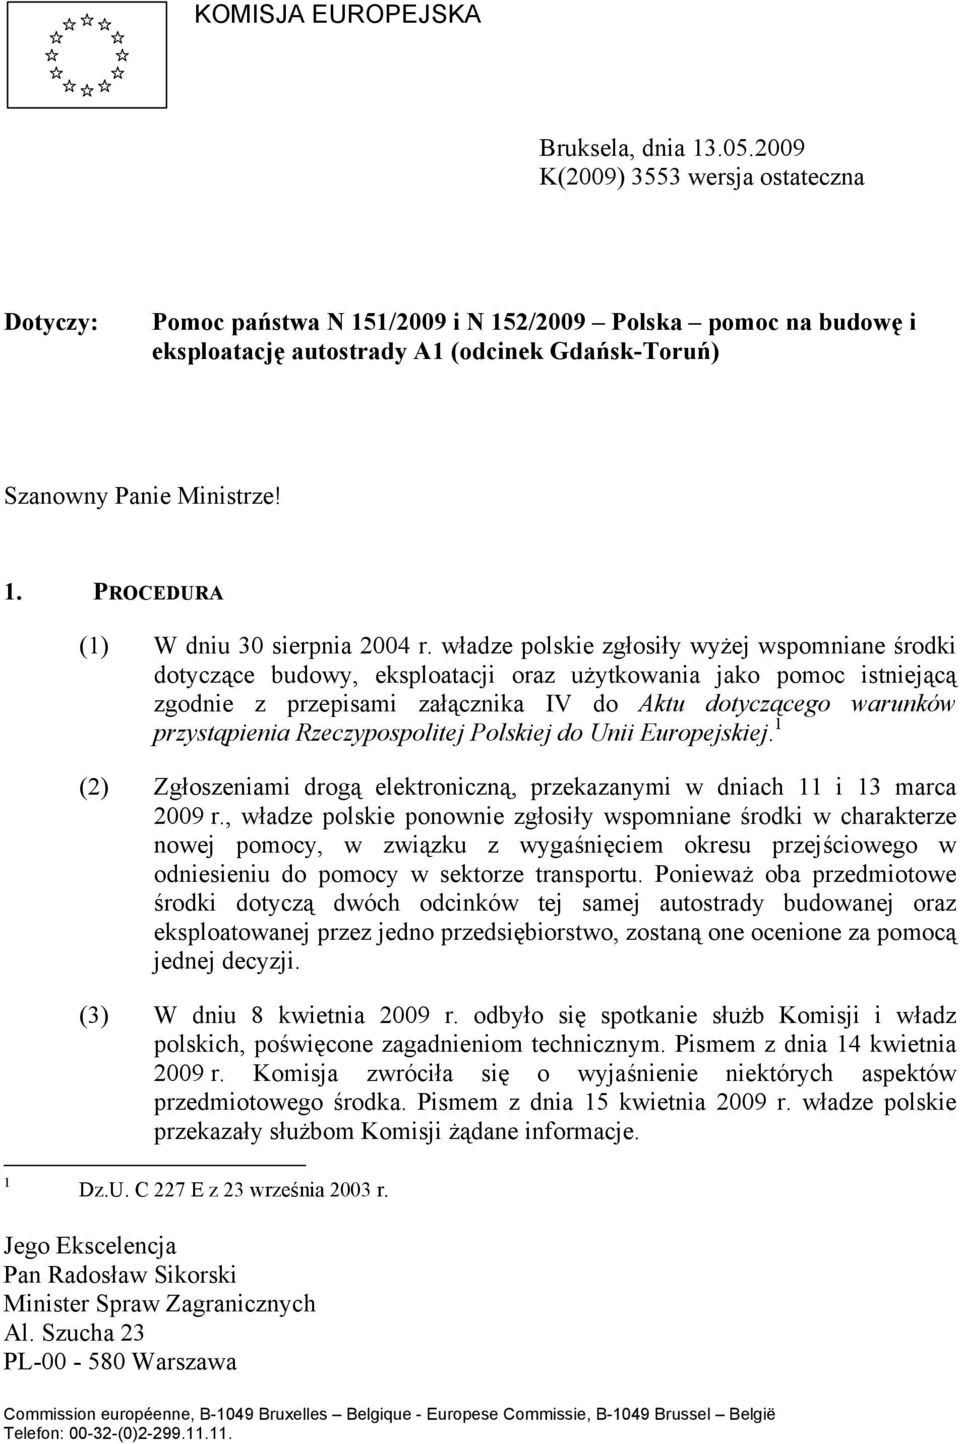 władze polskie zgłosiły wyżej wspomniane środki dotyczące budowy, eksploatacji oraz użytkowania jako pomoc istniejącą zgodnie z przepisami załącznika IV do Aktu dotyczącego warunków przystąpienia